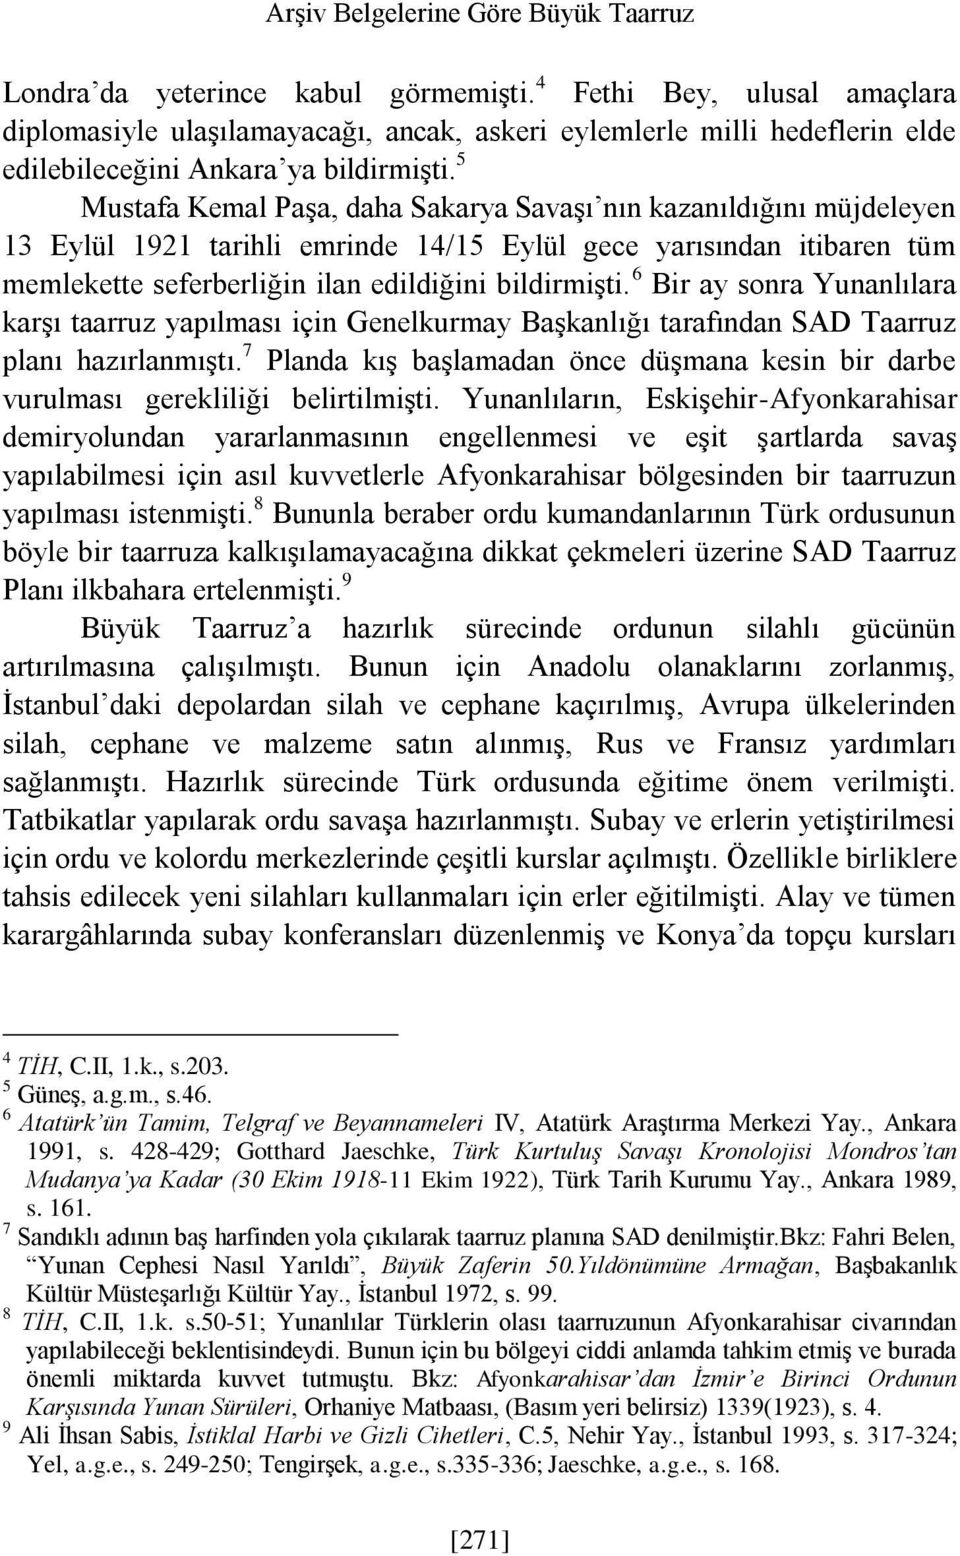 5 Mustafa Kemal Paşa, daha Sakarya Savaşı nın kazanıldığını müjdeleyen 13 Eylül 1921 tarihli emrinde 14/15 Eylül gece yarısından itibaren tüm memlekette seferberliğin ilan edildiğini bildirmişti.